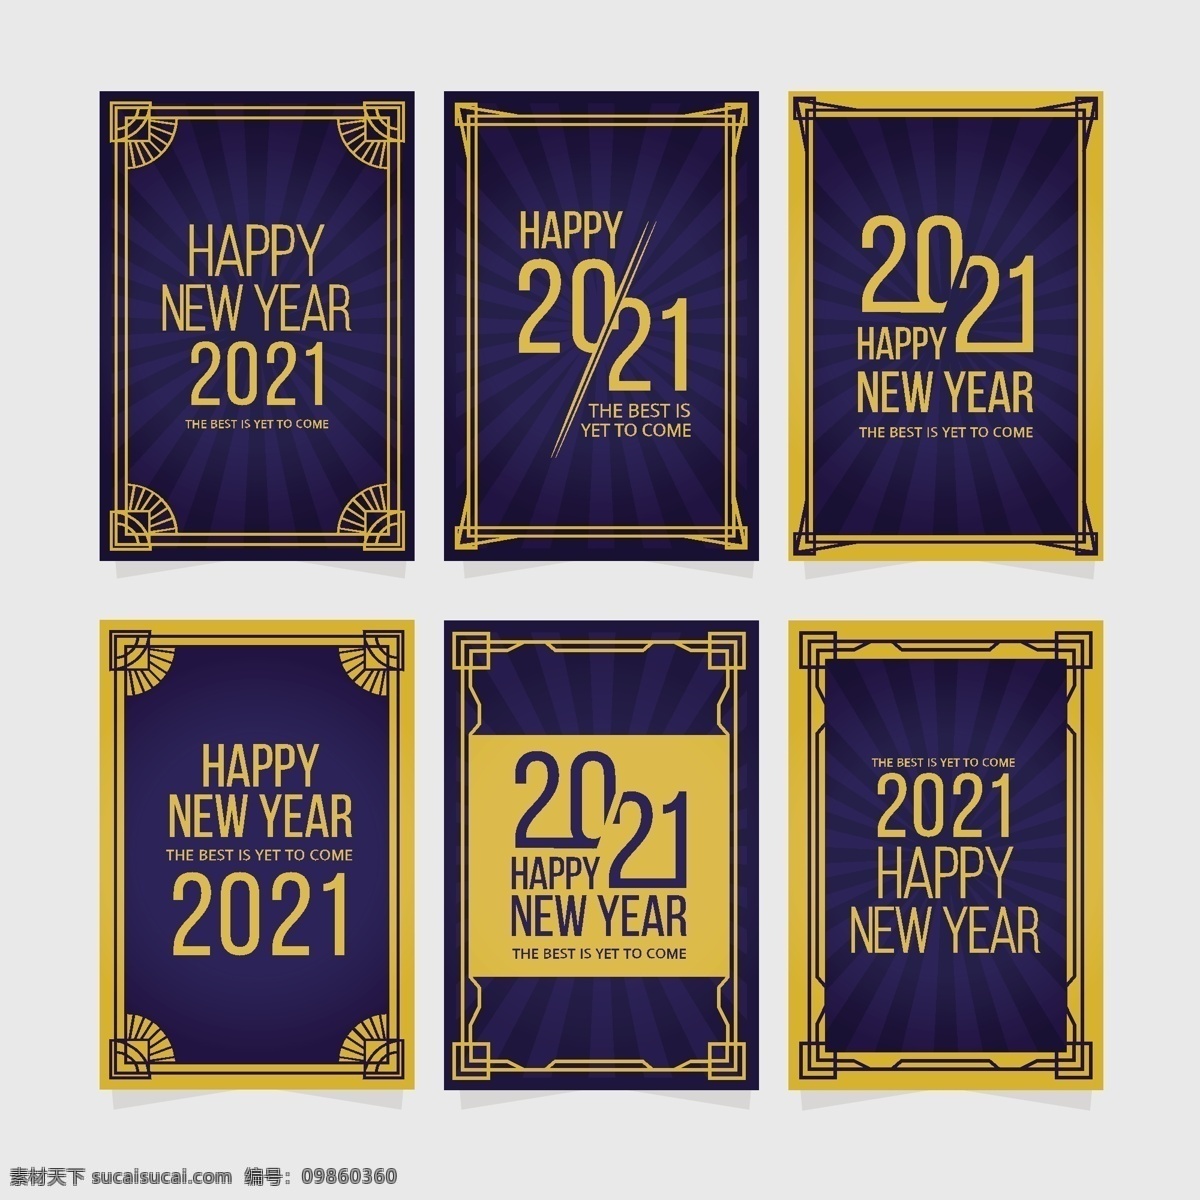 新年背景图片 新年背景 新年 海报 中国年 新年快乐 中国元素 节日 元旦 新春快乐 2021